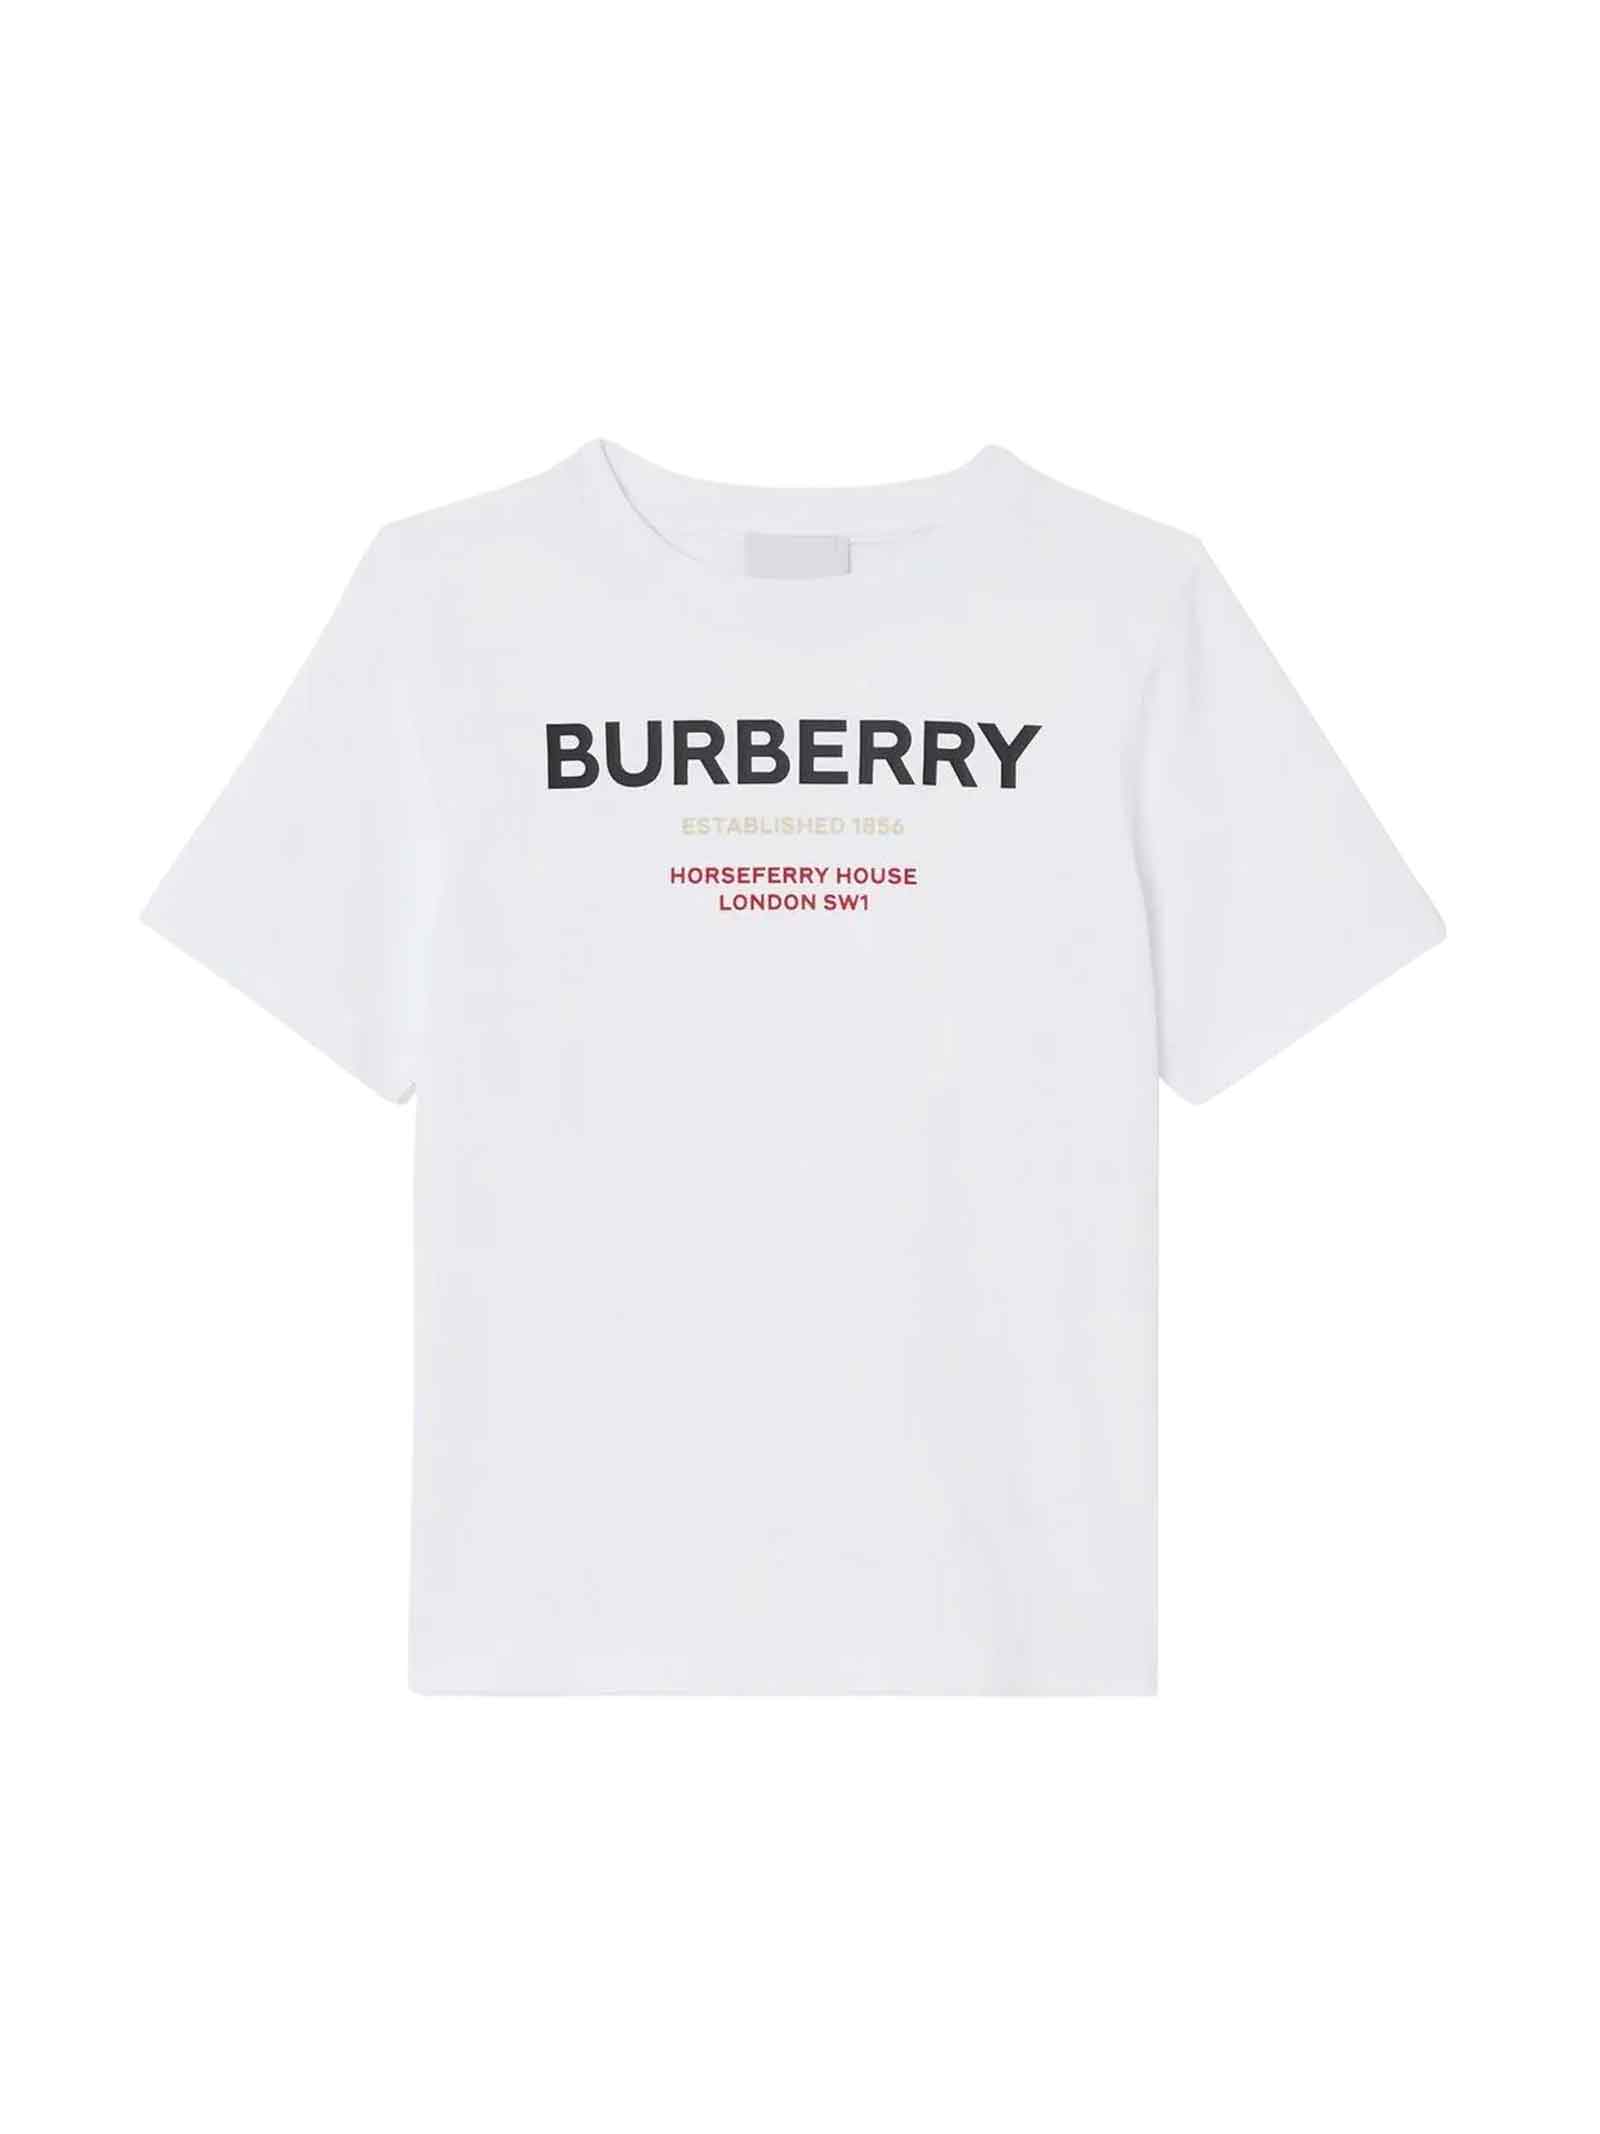 Burberry White T-shirt Girl